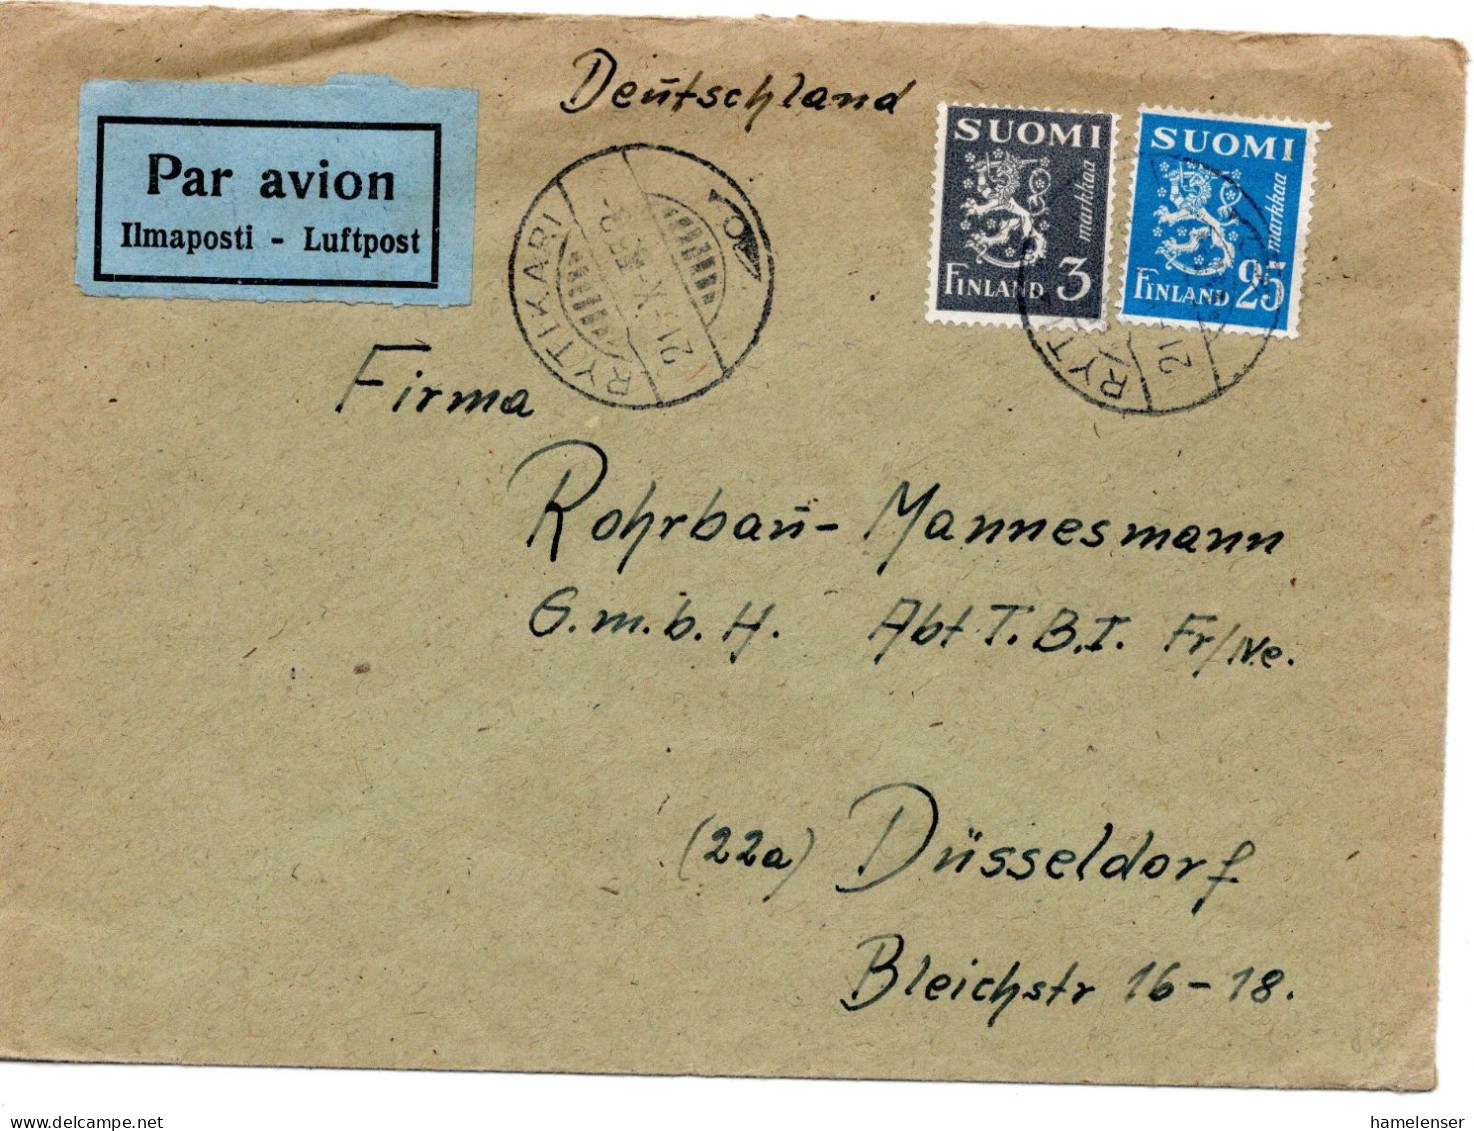 64615 - Finnland - 1953 - 25Mk Wappenloewe MiF A LpBf RYTIKARI -> Westdeutschland - Briefe U. Dokumente